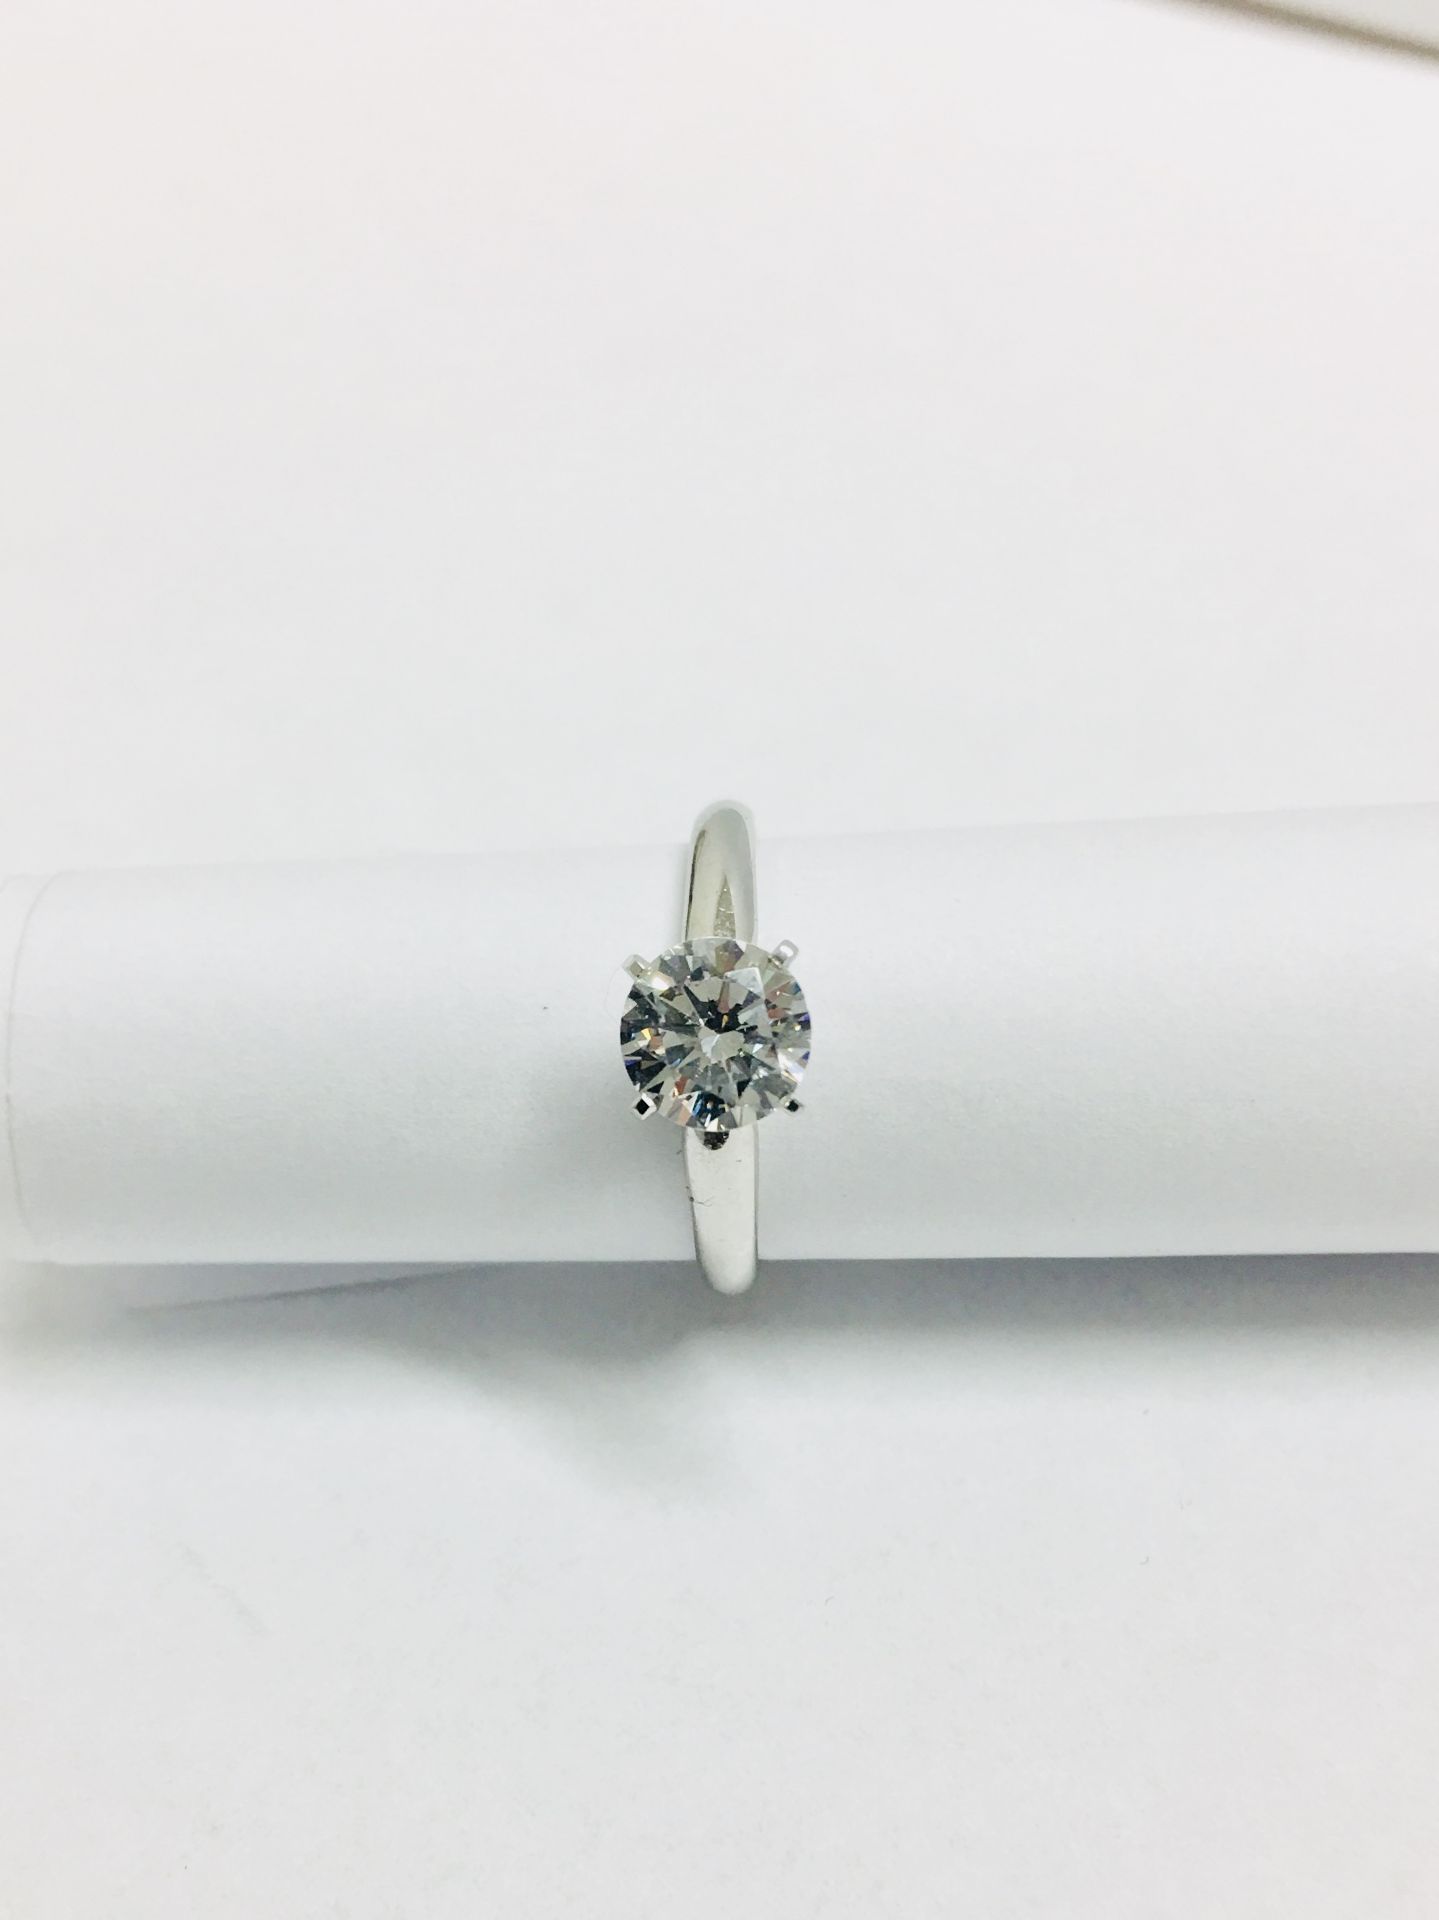 Platinum diamond solitaire ring 4 claw,0.50ct brilliant cut diamond h colour vs clarity enhanced,3. - Bild 3 aus 3